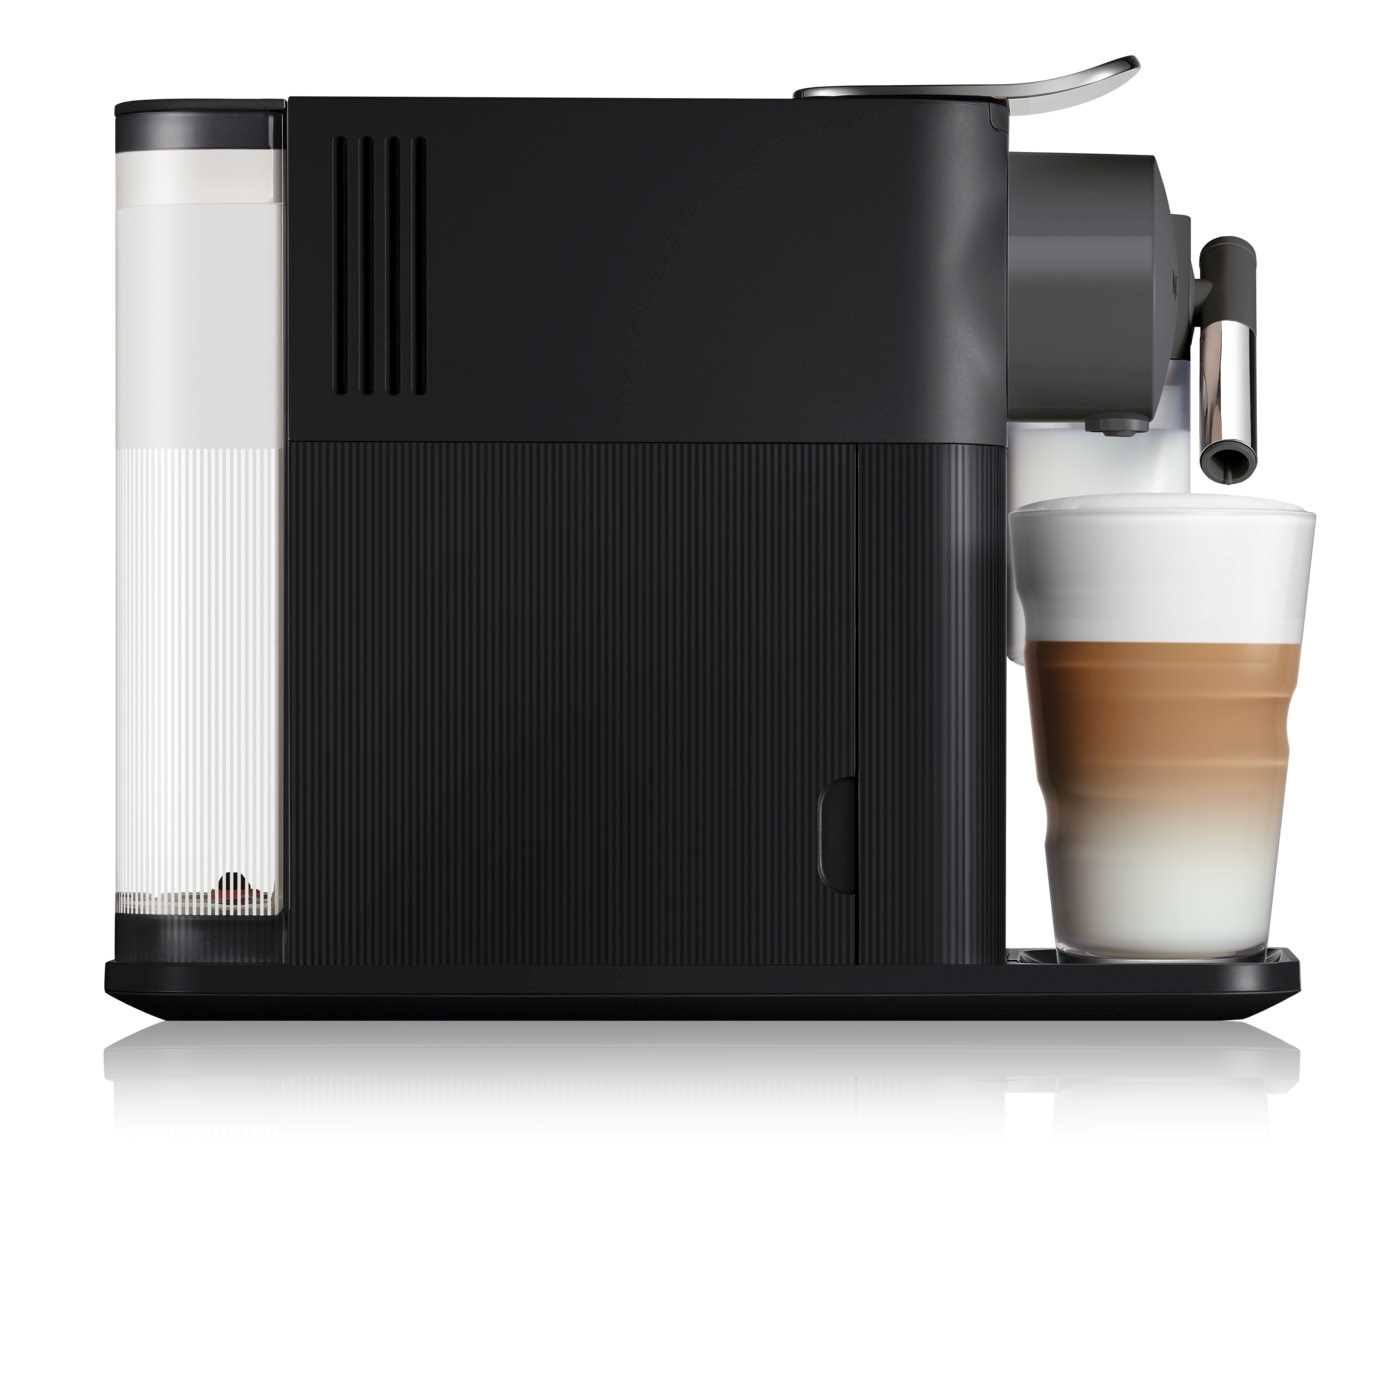 מכונת קפה Nespresso לטיסימה Lattissima One בצבע שחור דגם F111-IL-BK-NE - תמונה 2